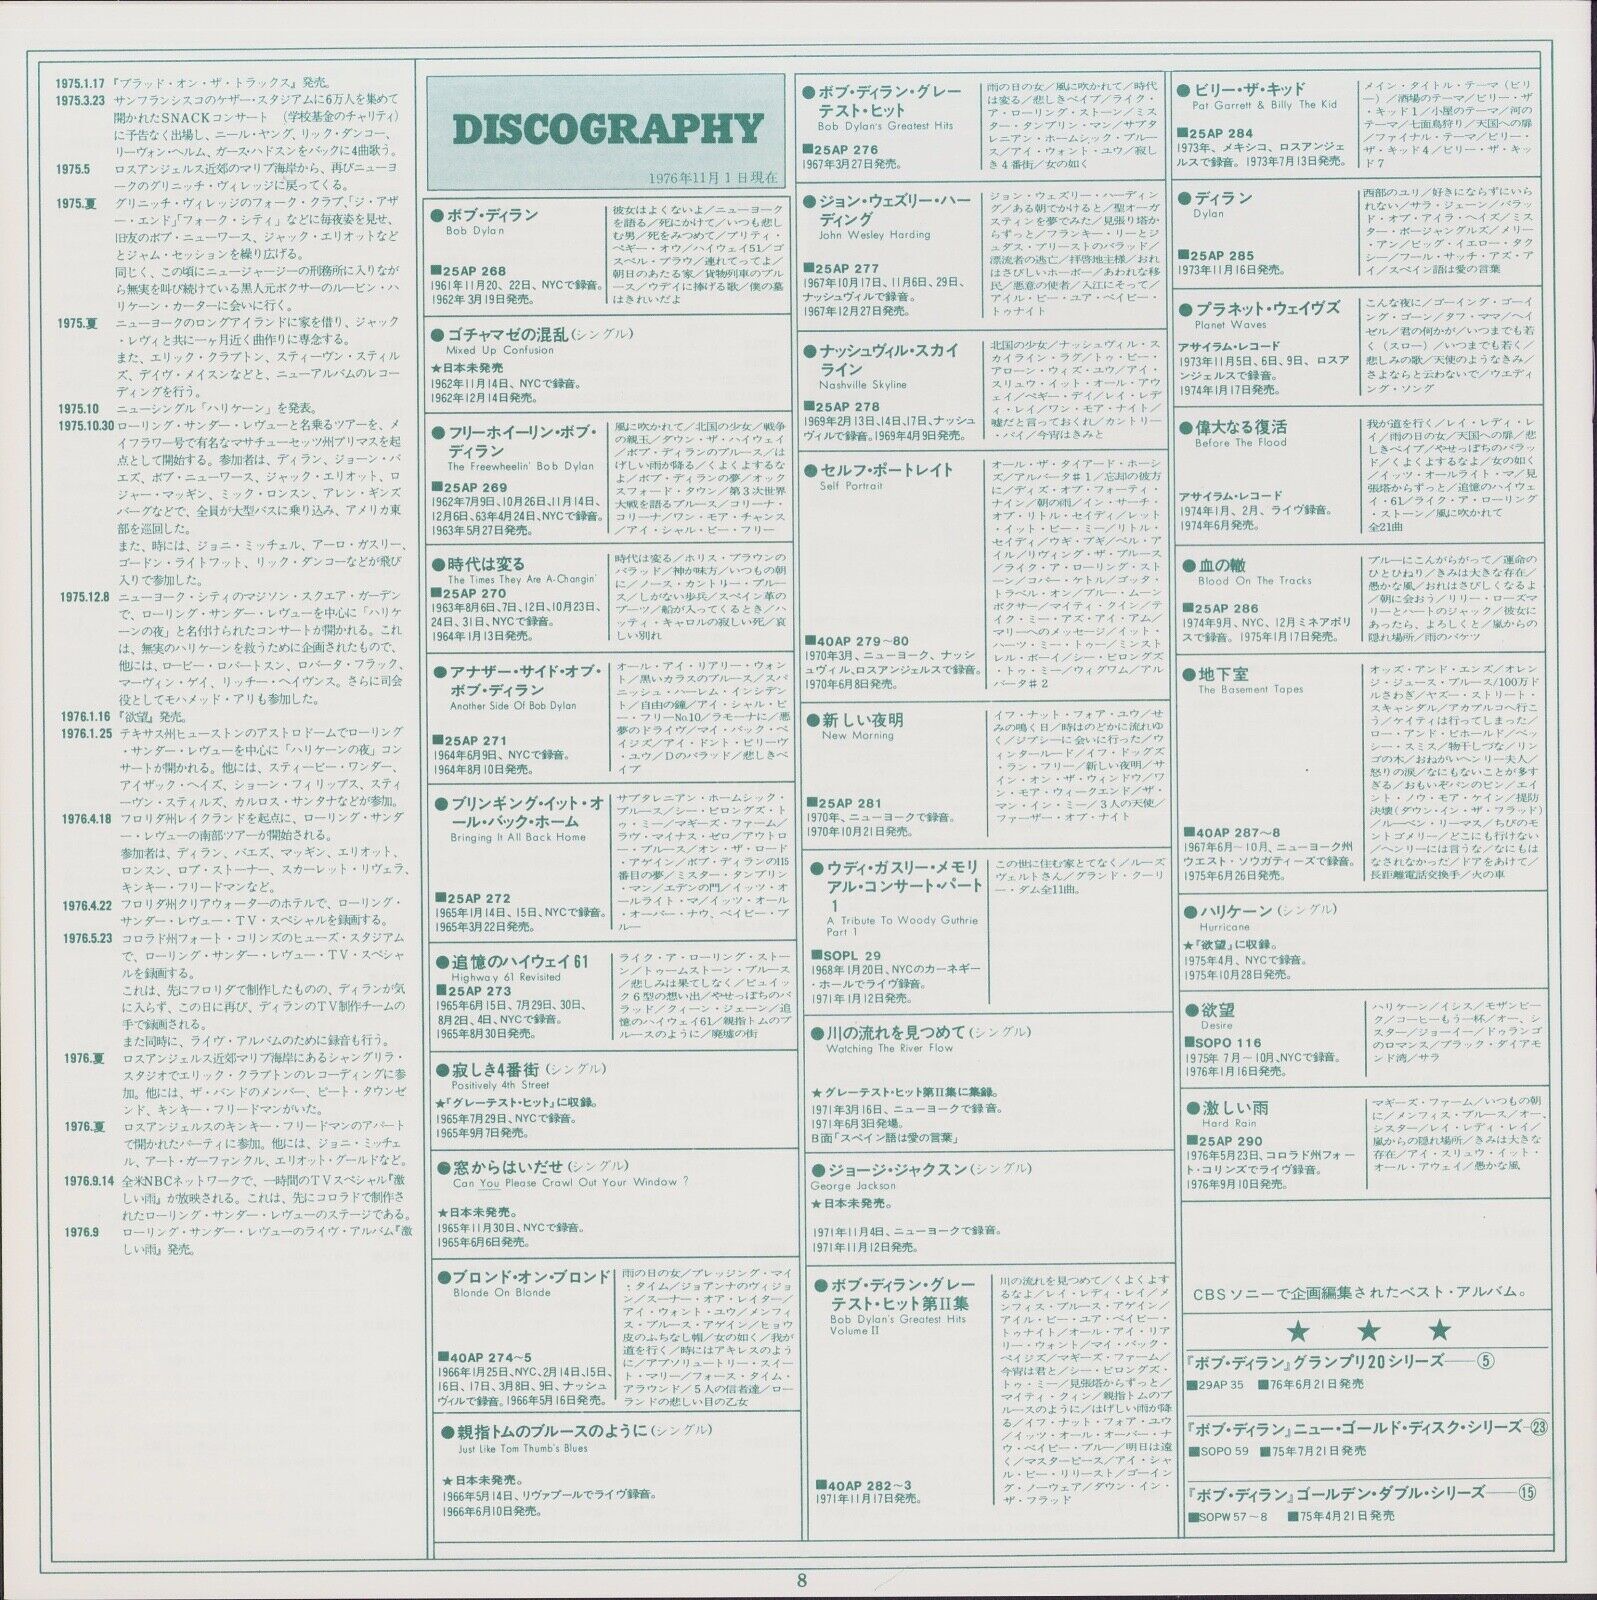 Bob Dylan ‎- Blonde On Blonde Vinyl 2LP JAP